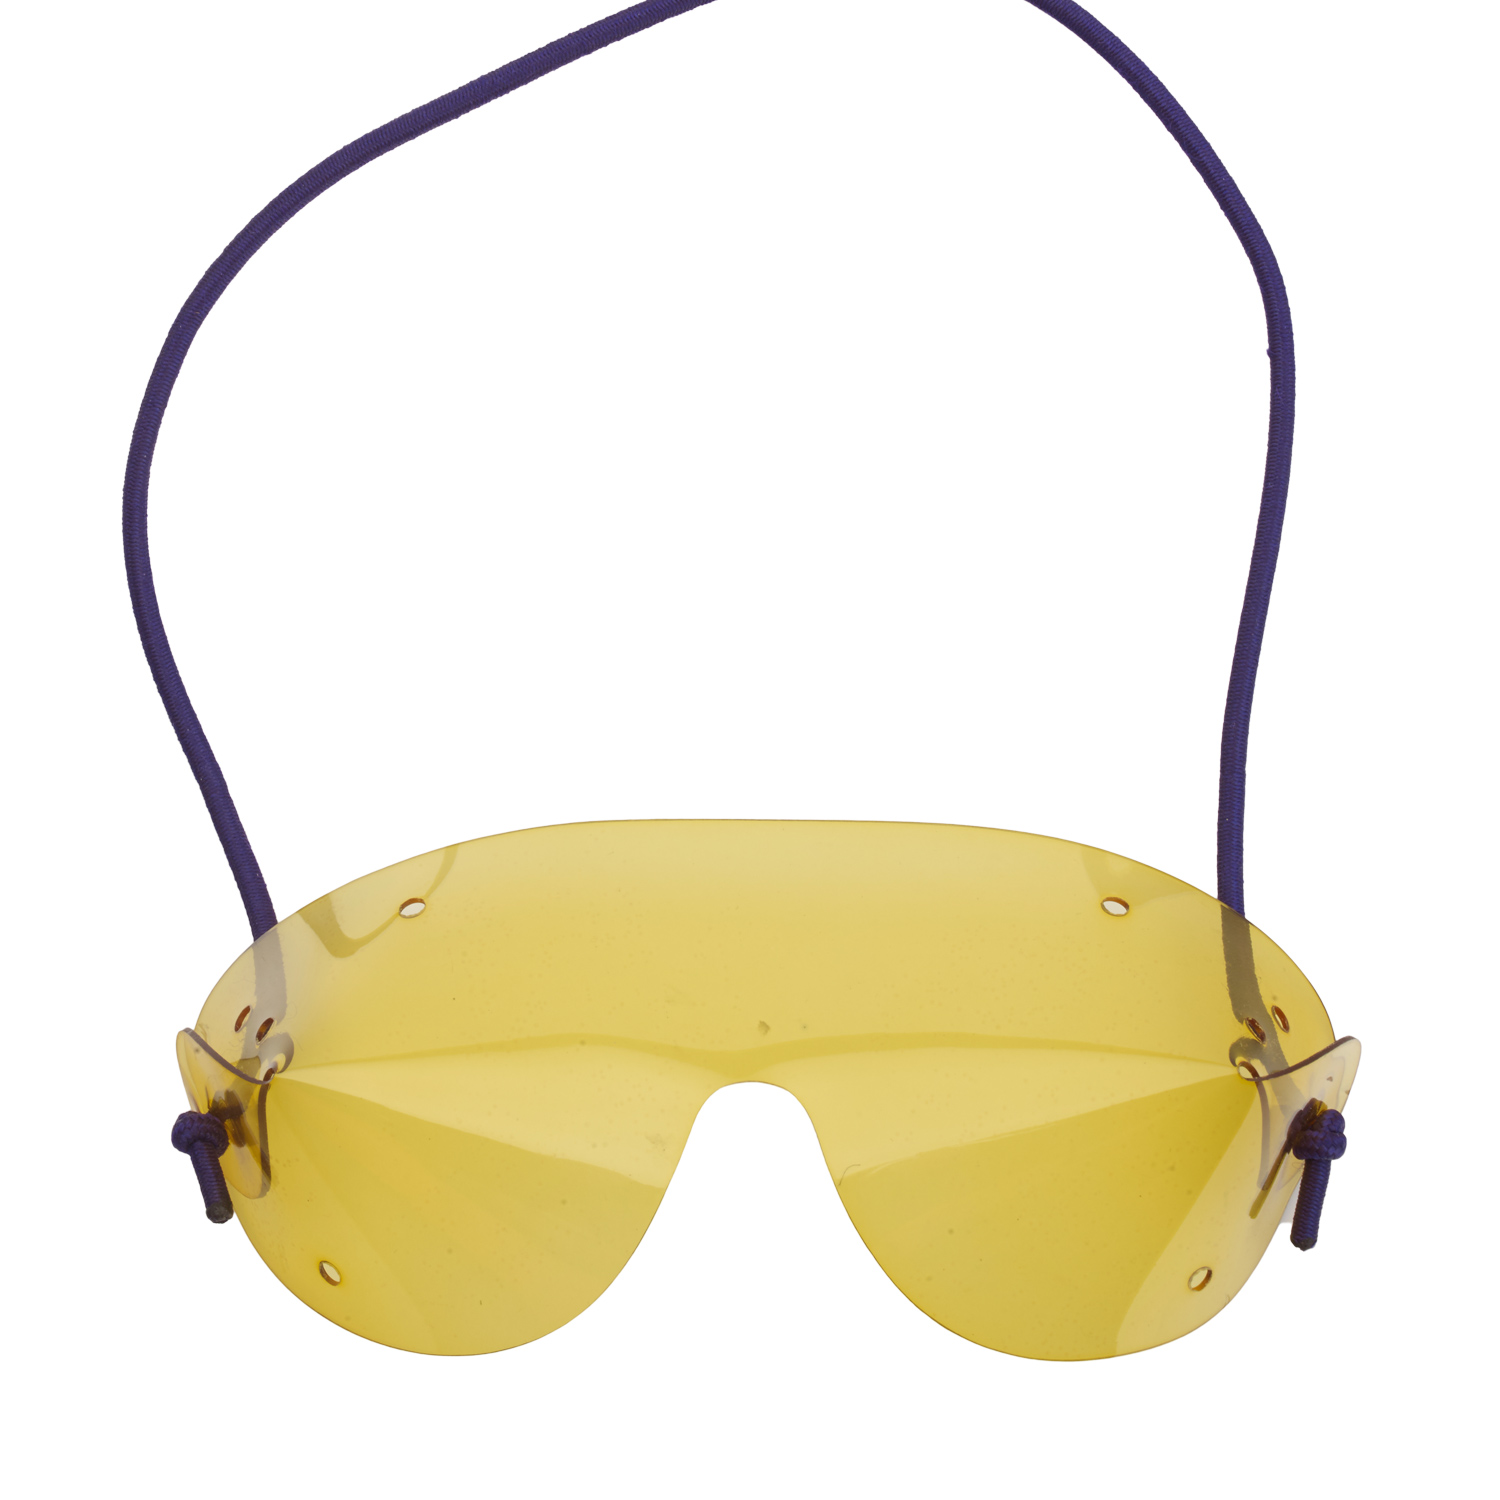 Sprungbrille Flexvision